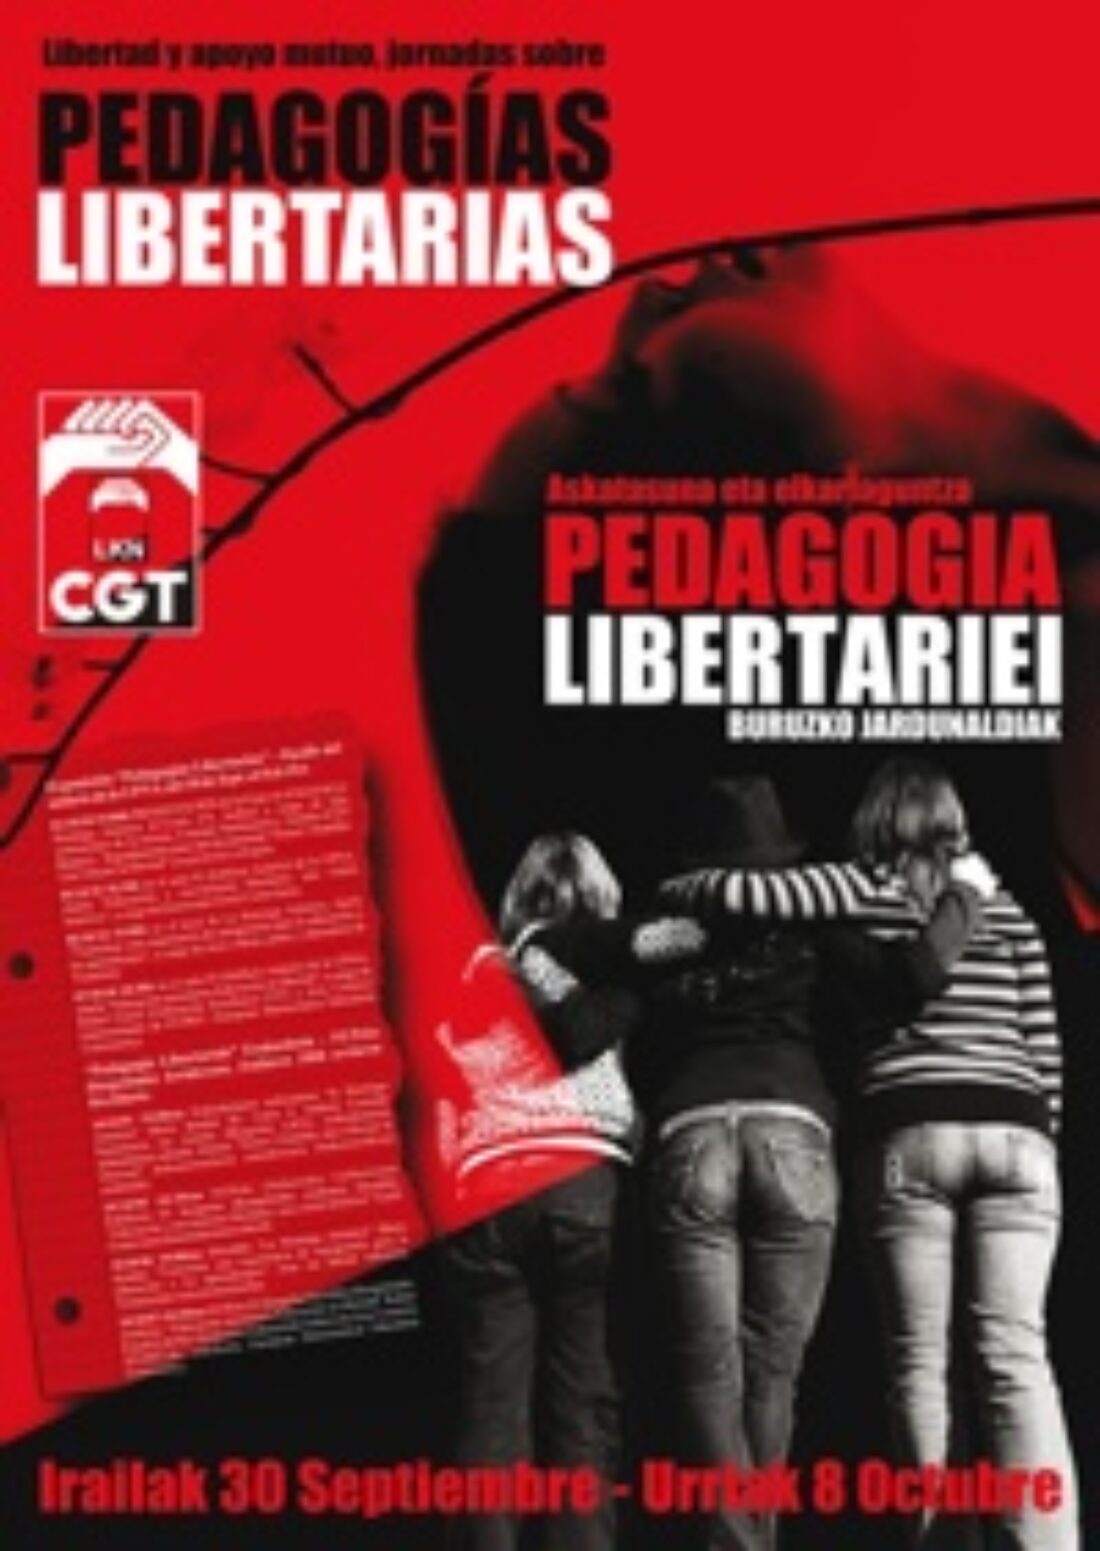 30 setp-8 octubre, Iruñea : Jornadas sobre Pedagogías Libertarias